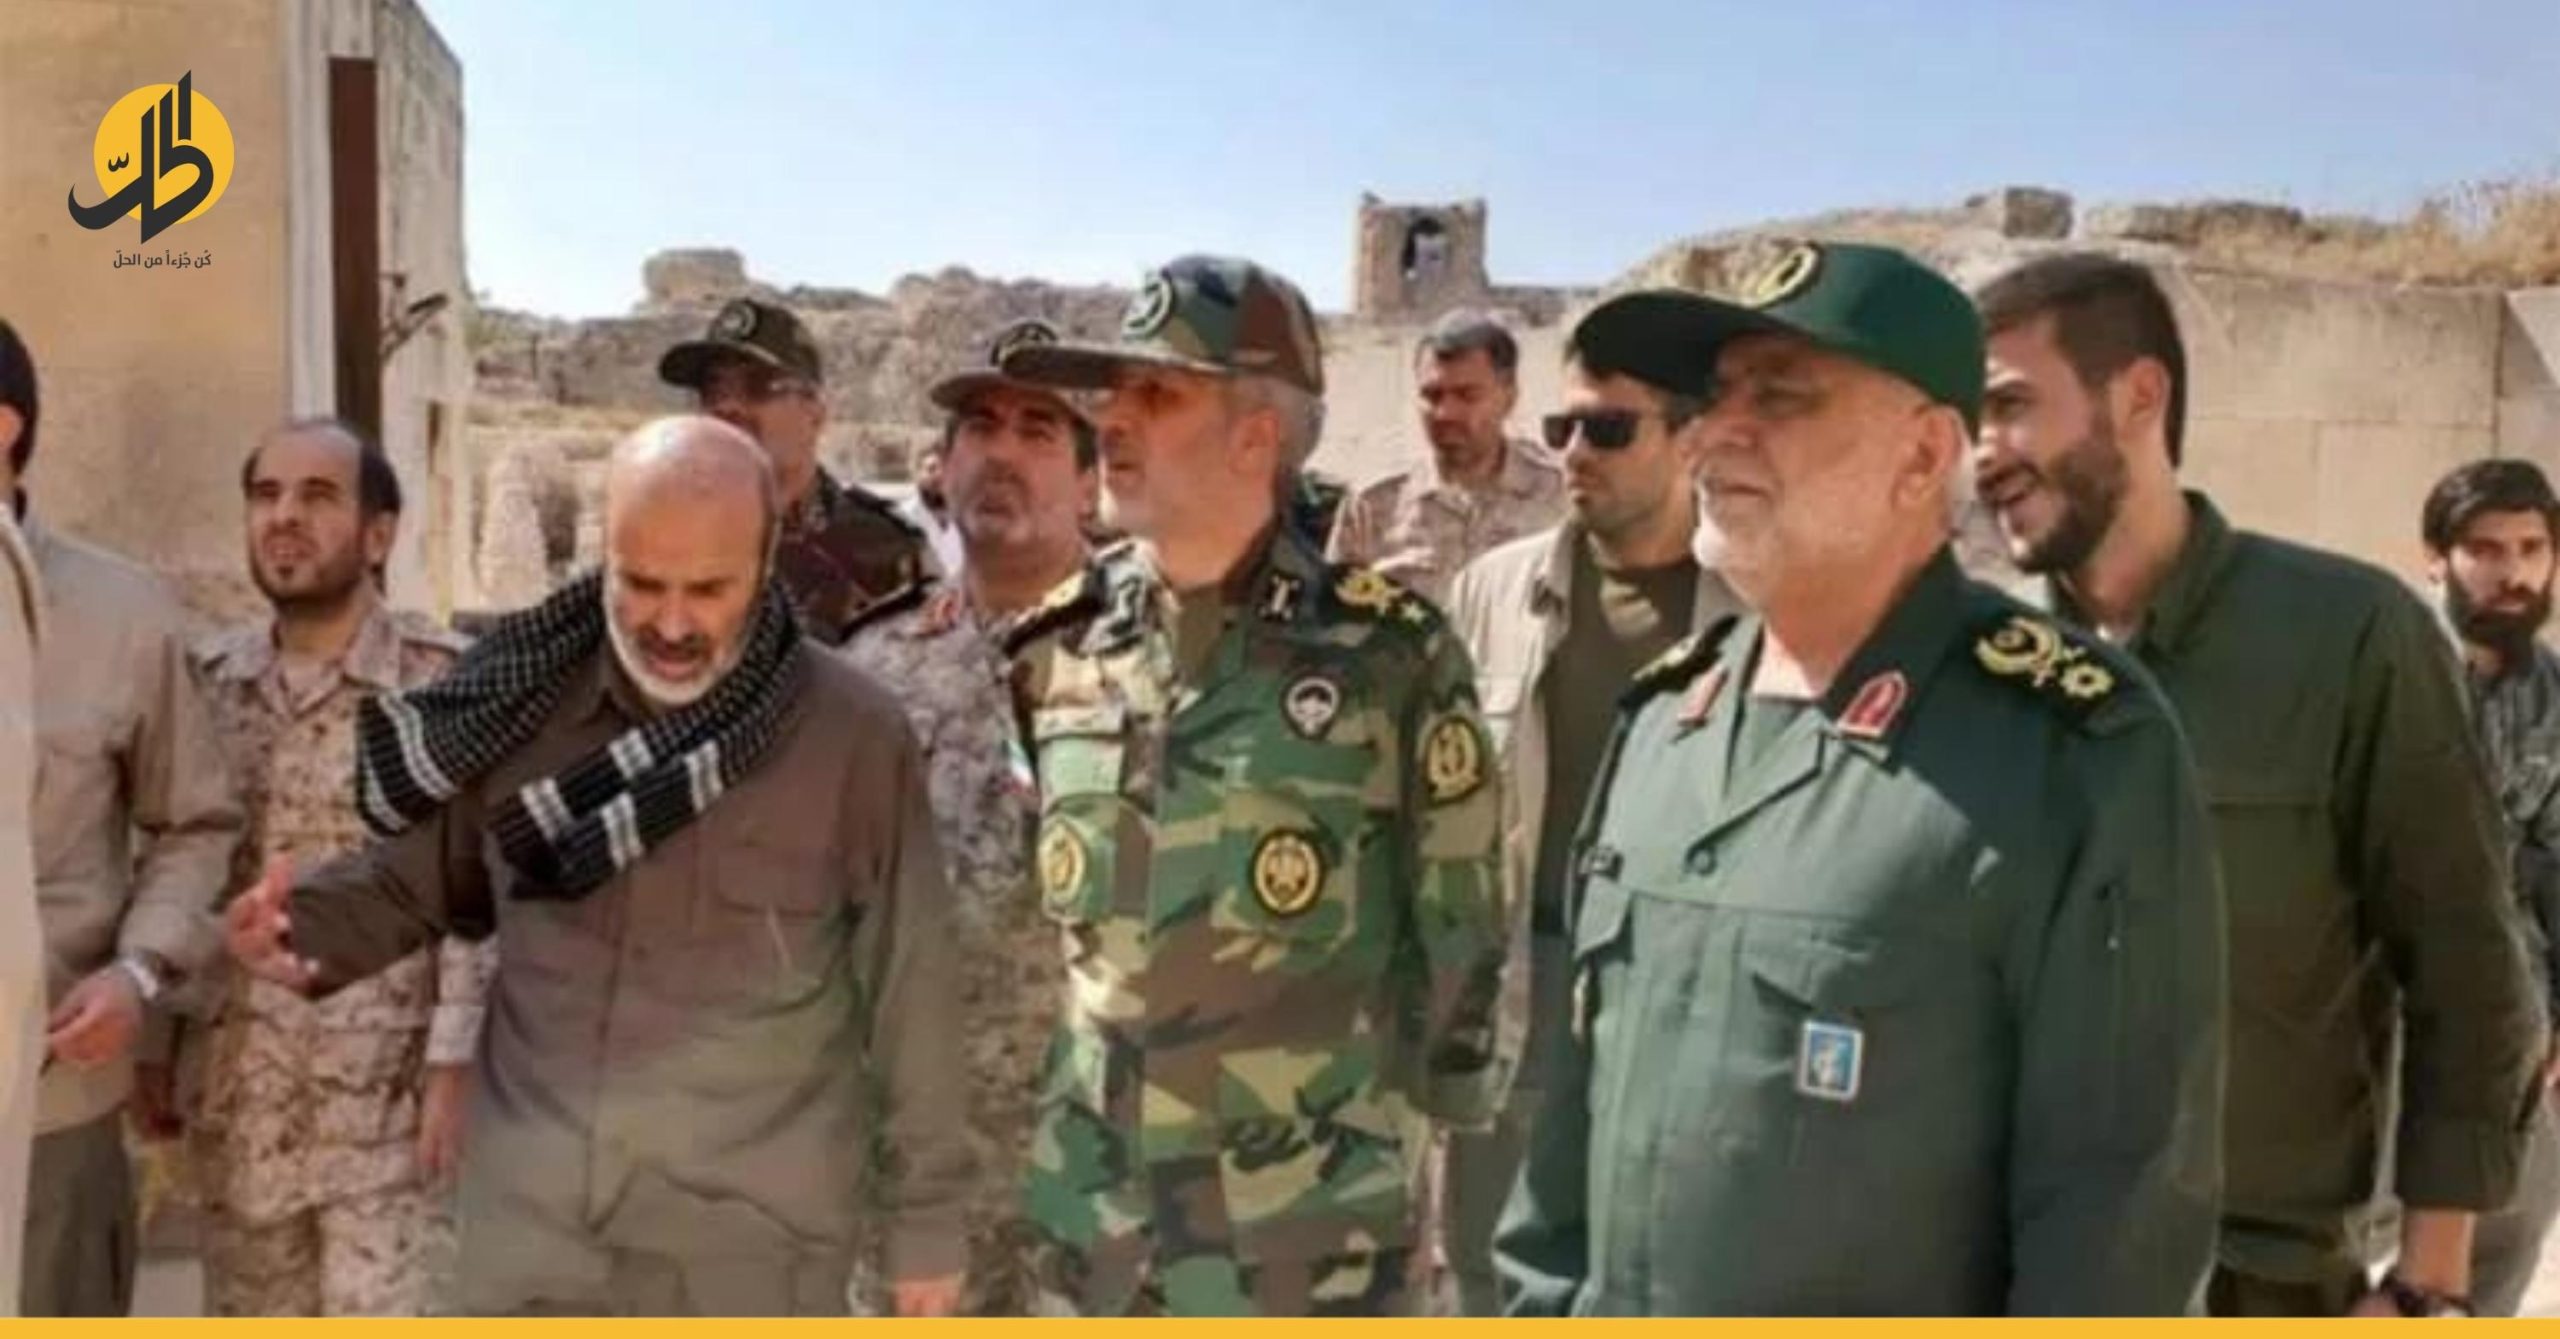 “الحرس الثوري” الإيراني يعين قائدا جديدا في سوريا